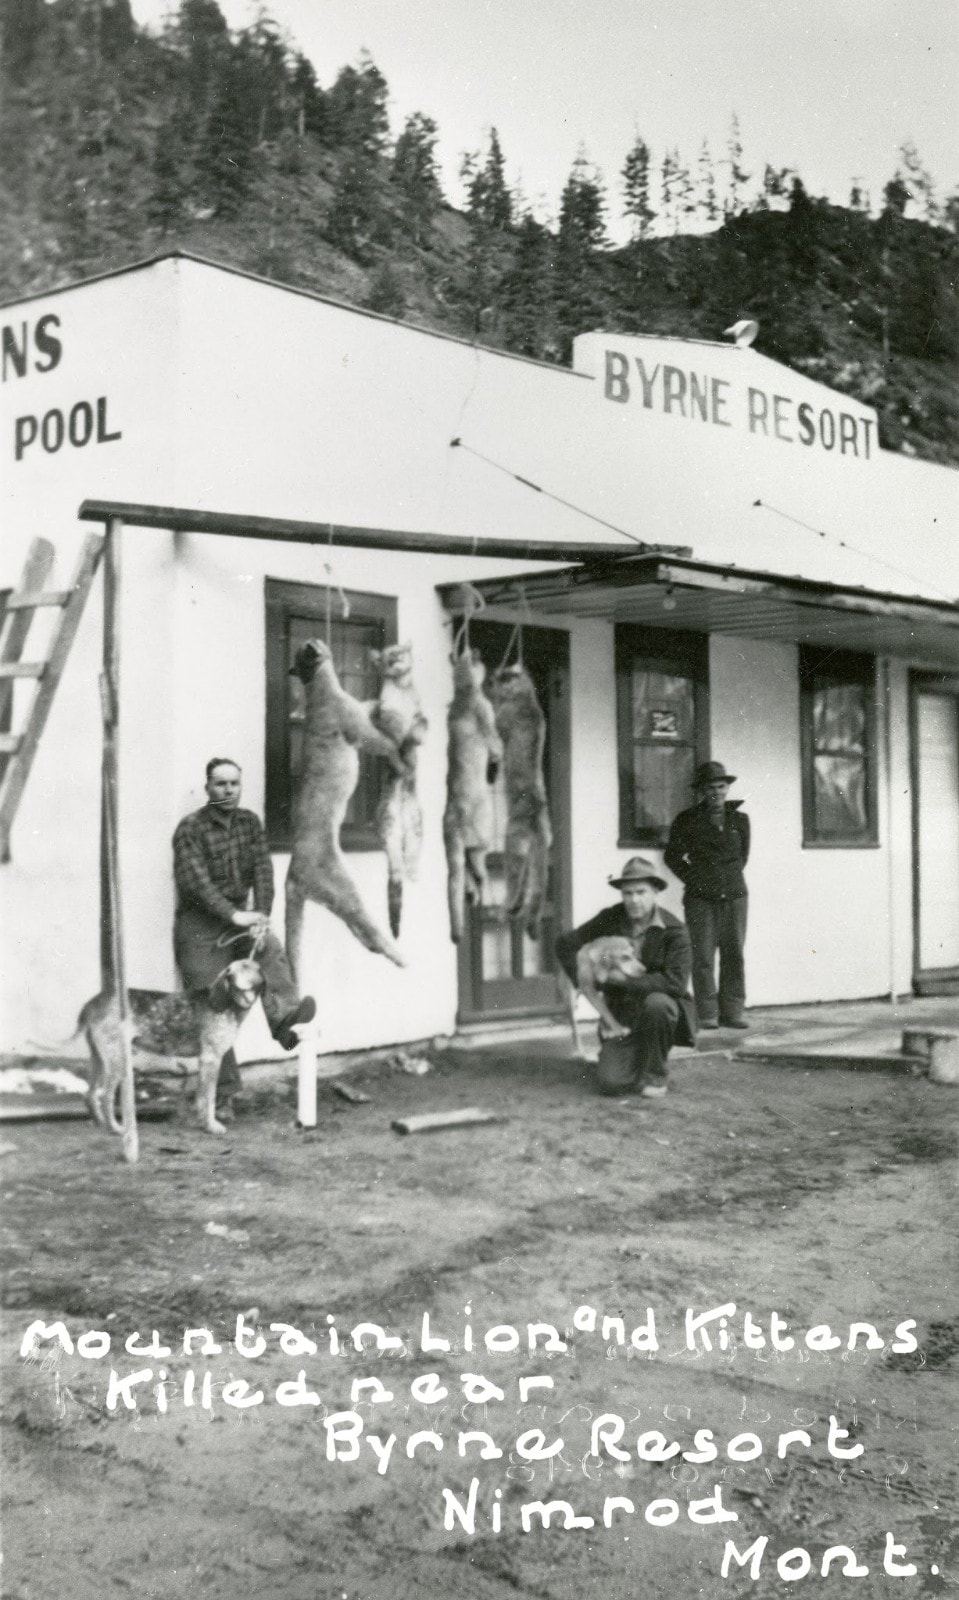 Byrne Resort at Nimrod Warm Springs